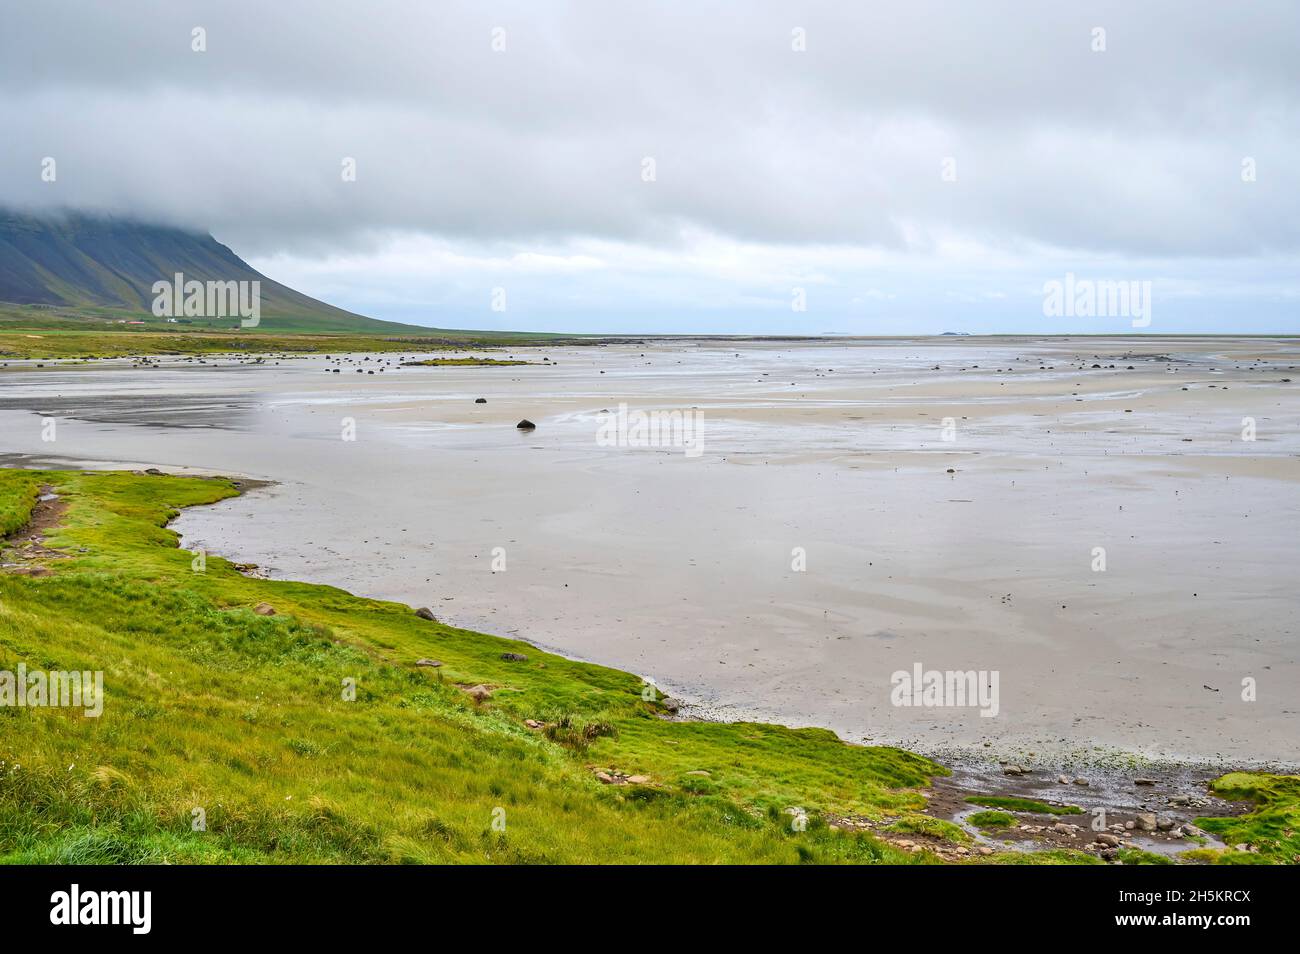 River delta at low tide; Bardastrandarvegur, Westfjords, Iceland Stock Photo